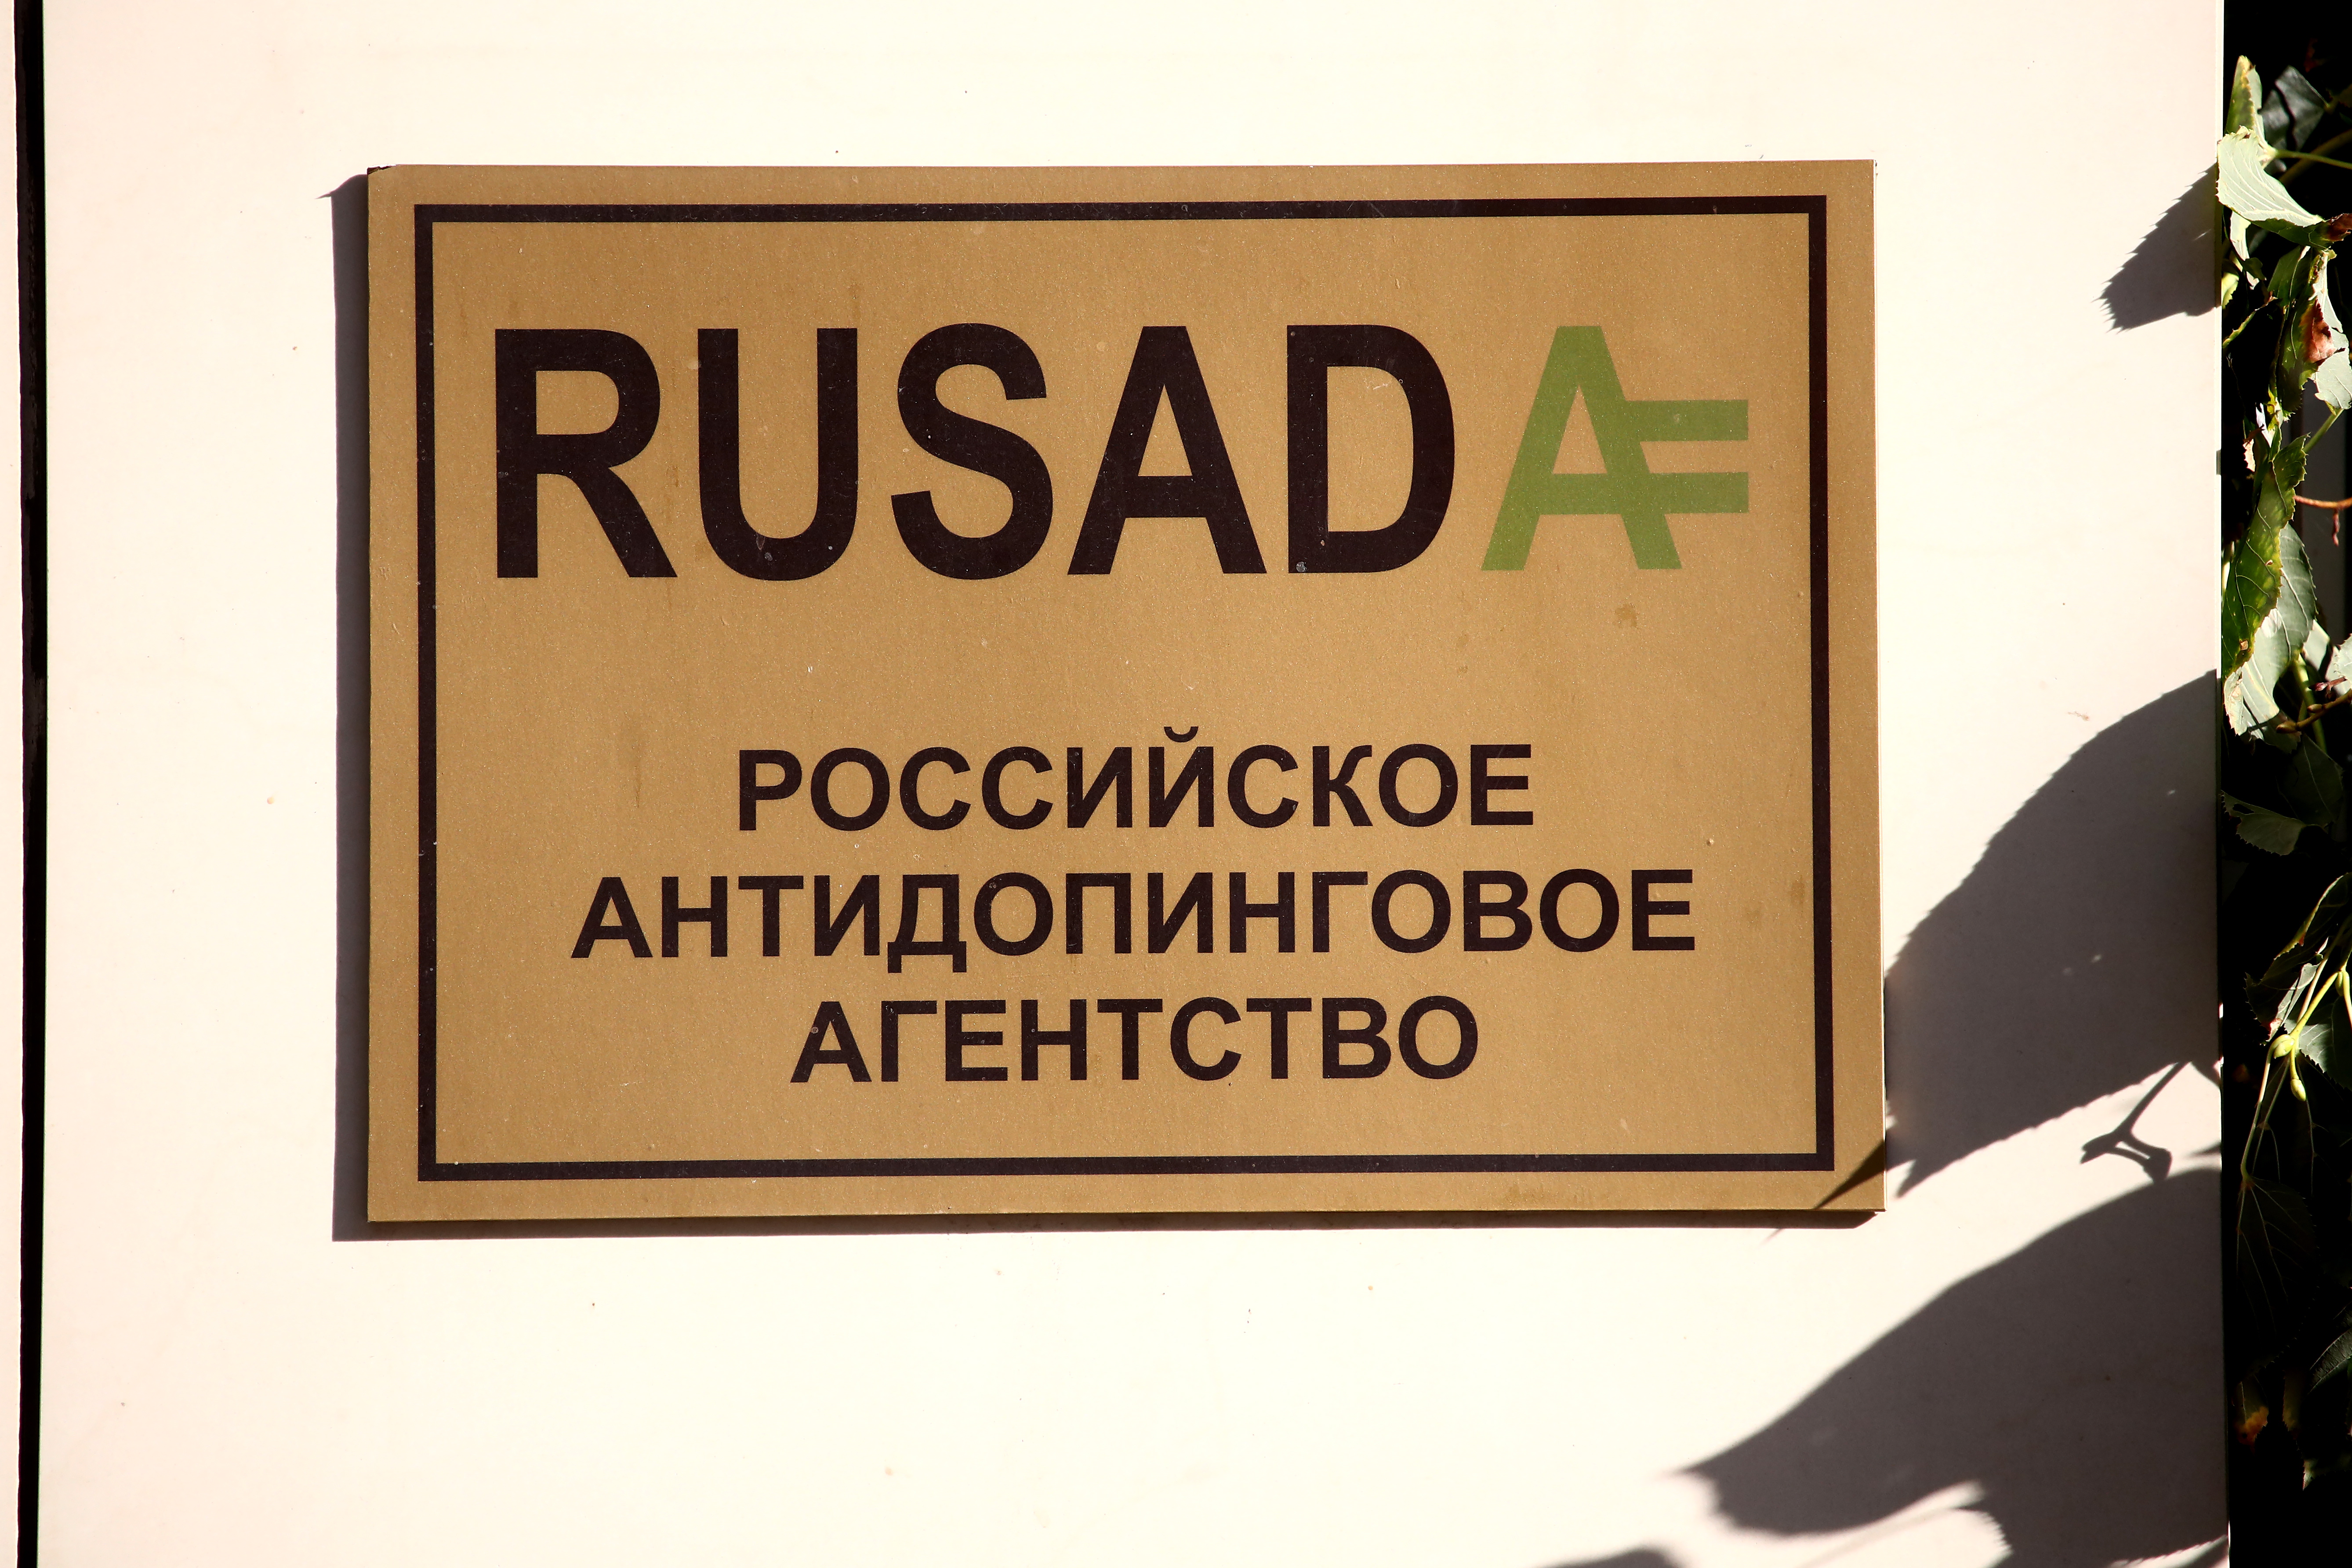 Рос ада. РУСАДА. РУСАДА логотип. РУСАДА фото. Российское антидопинговое агентство РУСАДА это.